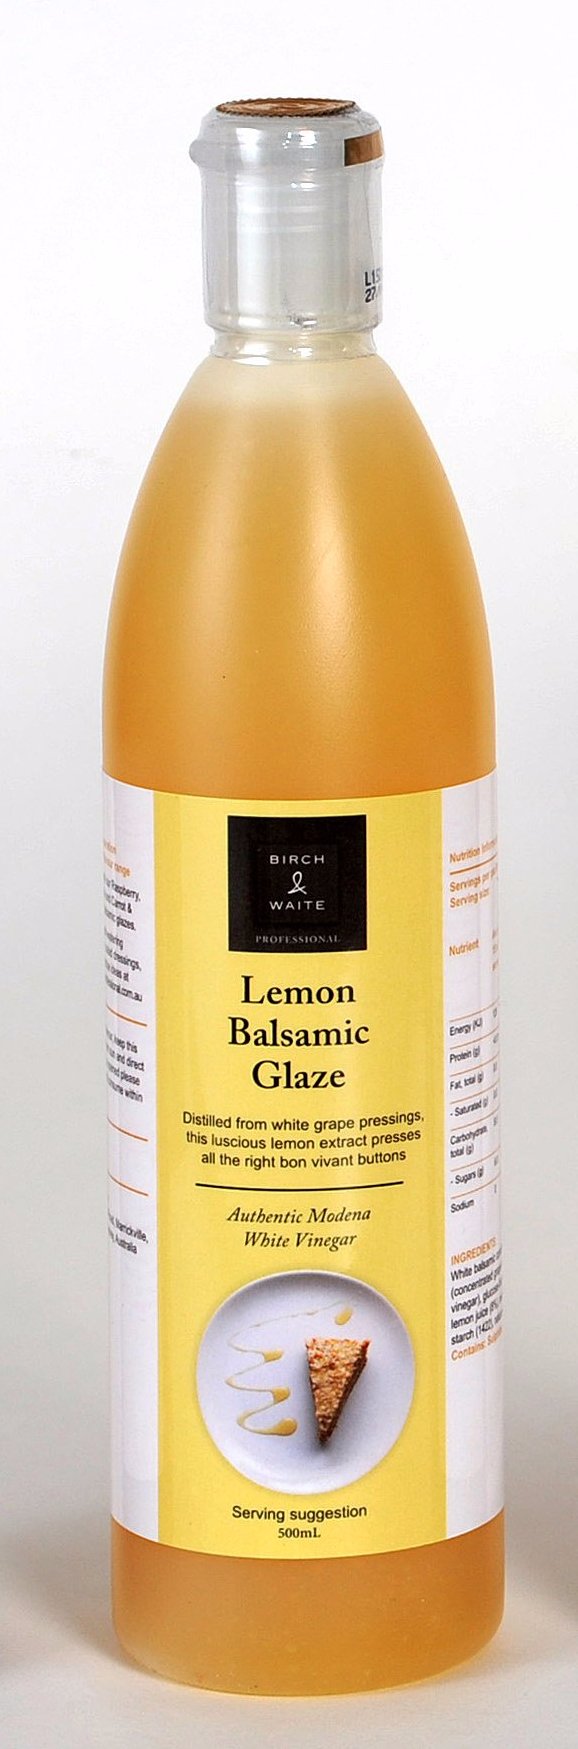 Lemon Balsamic Glaze 500ml Bottle Birch & Waite